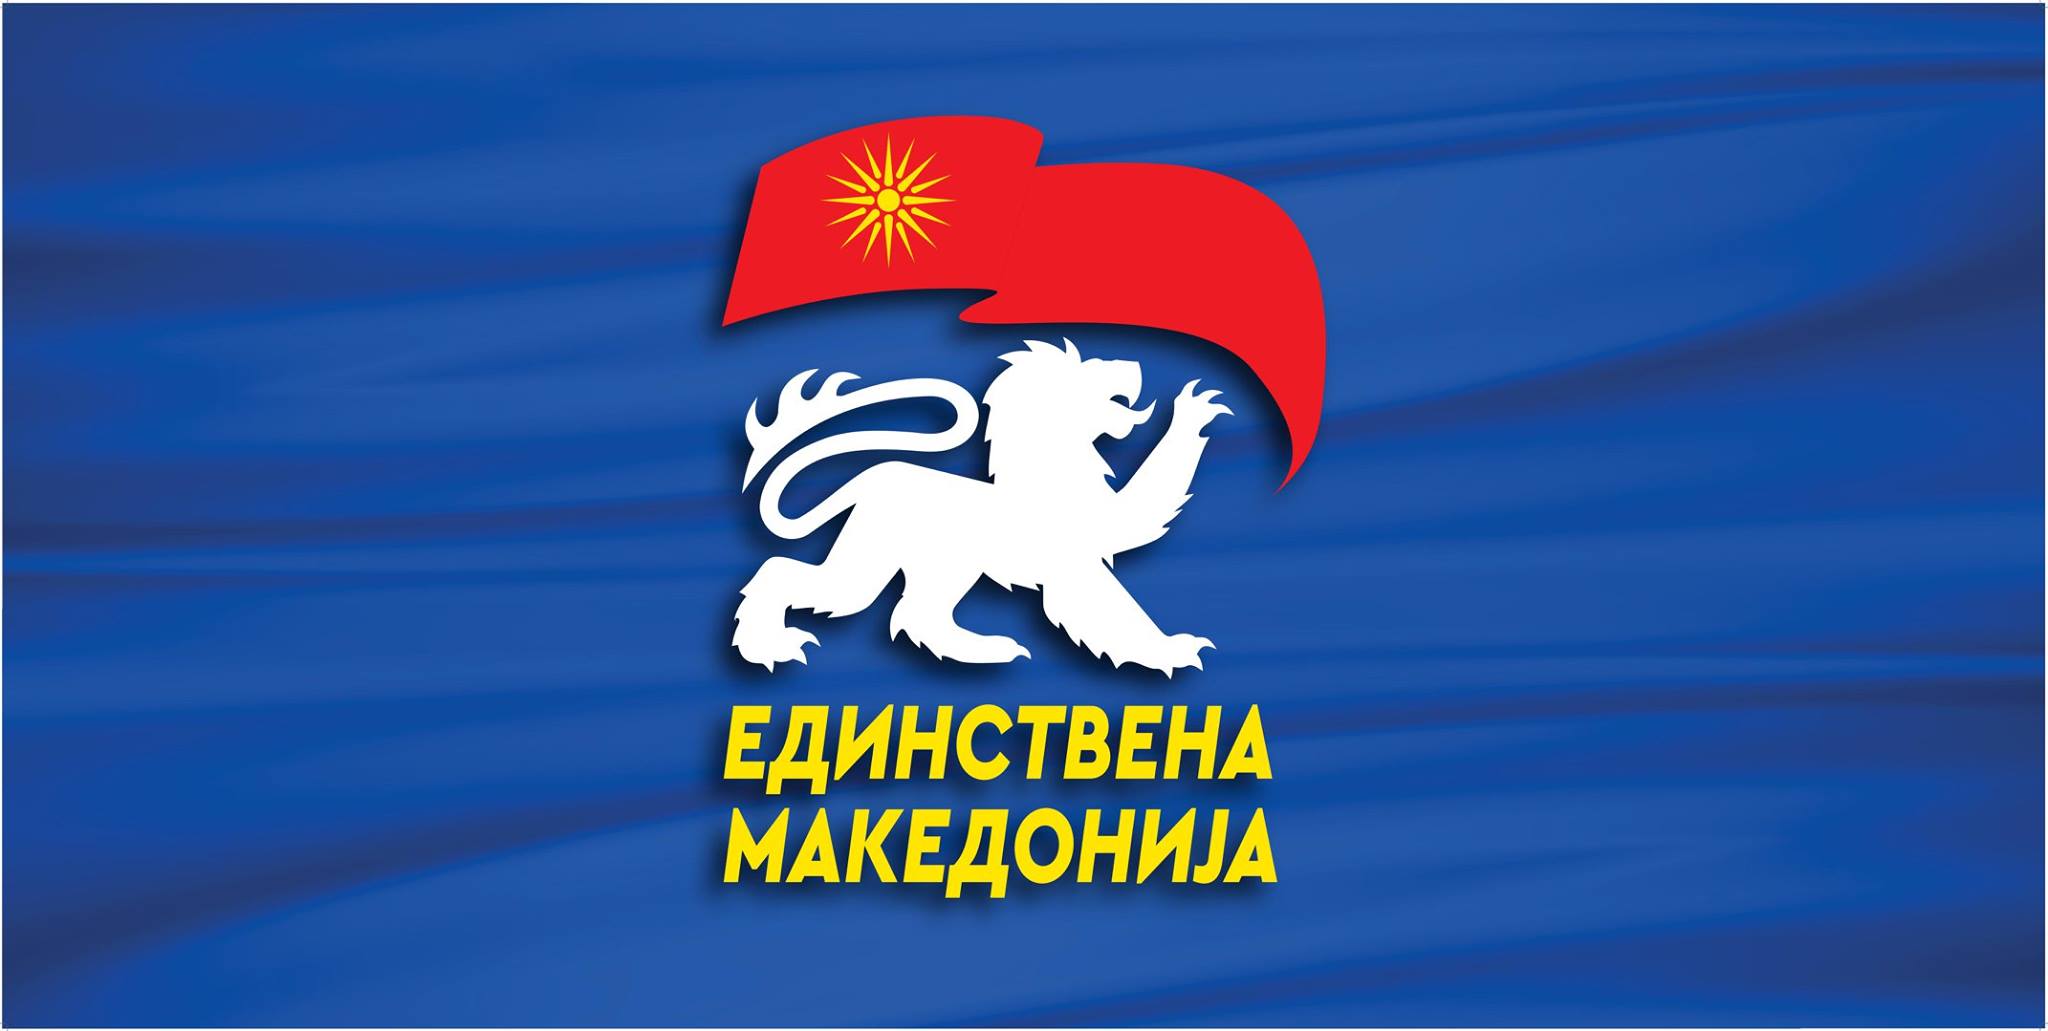 Единствена Македонија до владата: Прашањето за Македонците не е прашање на една влада туку на македонскиот народ, покажете го т.н.  француски документ